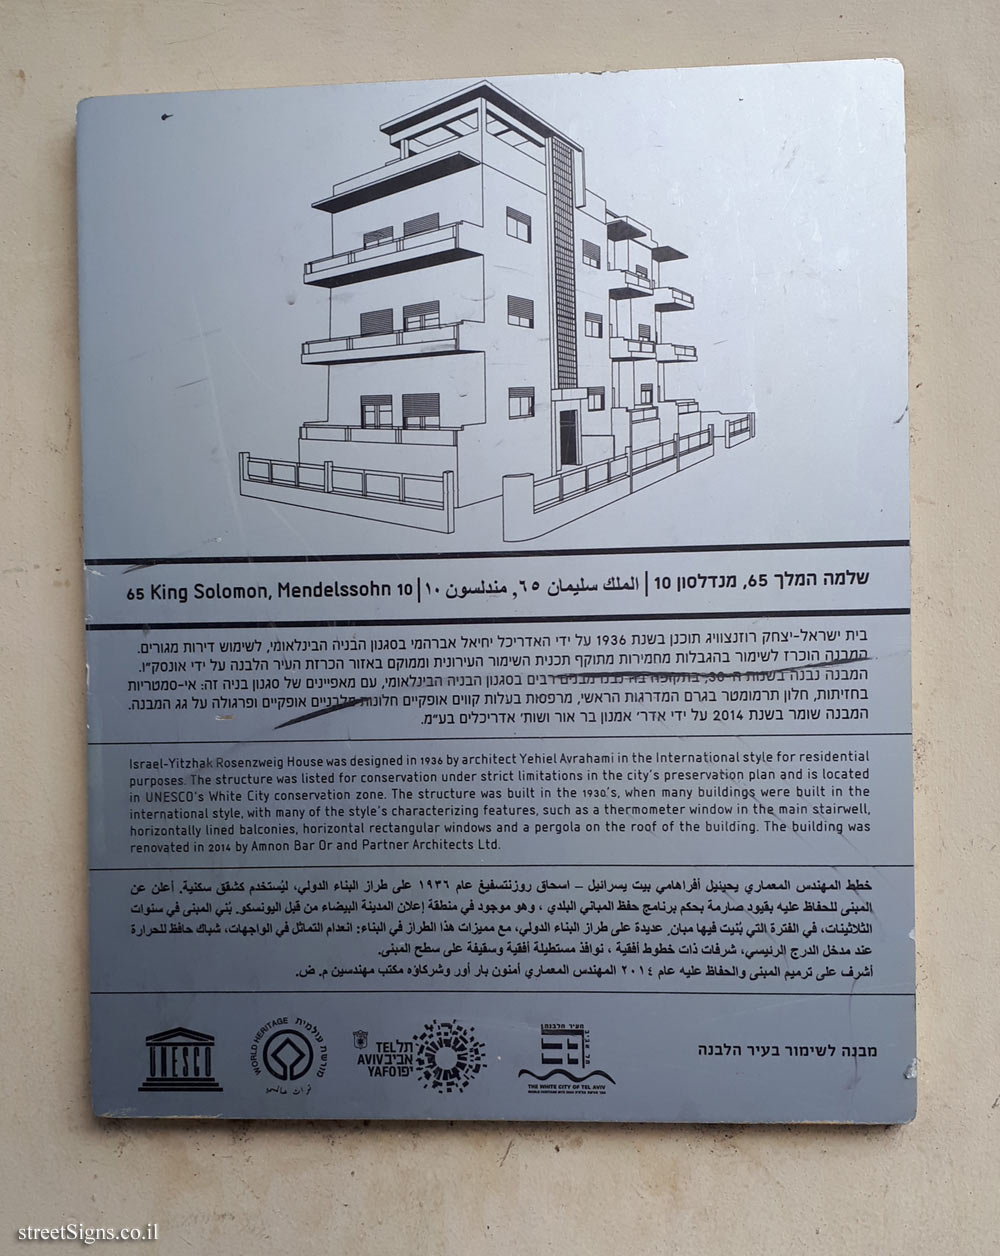 Tel Aviv - buildings for conservation - 65 King Solomon, Mendelssohn 10